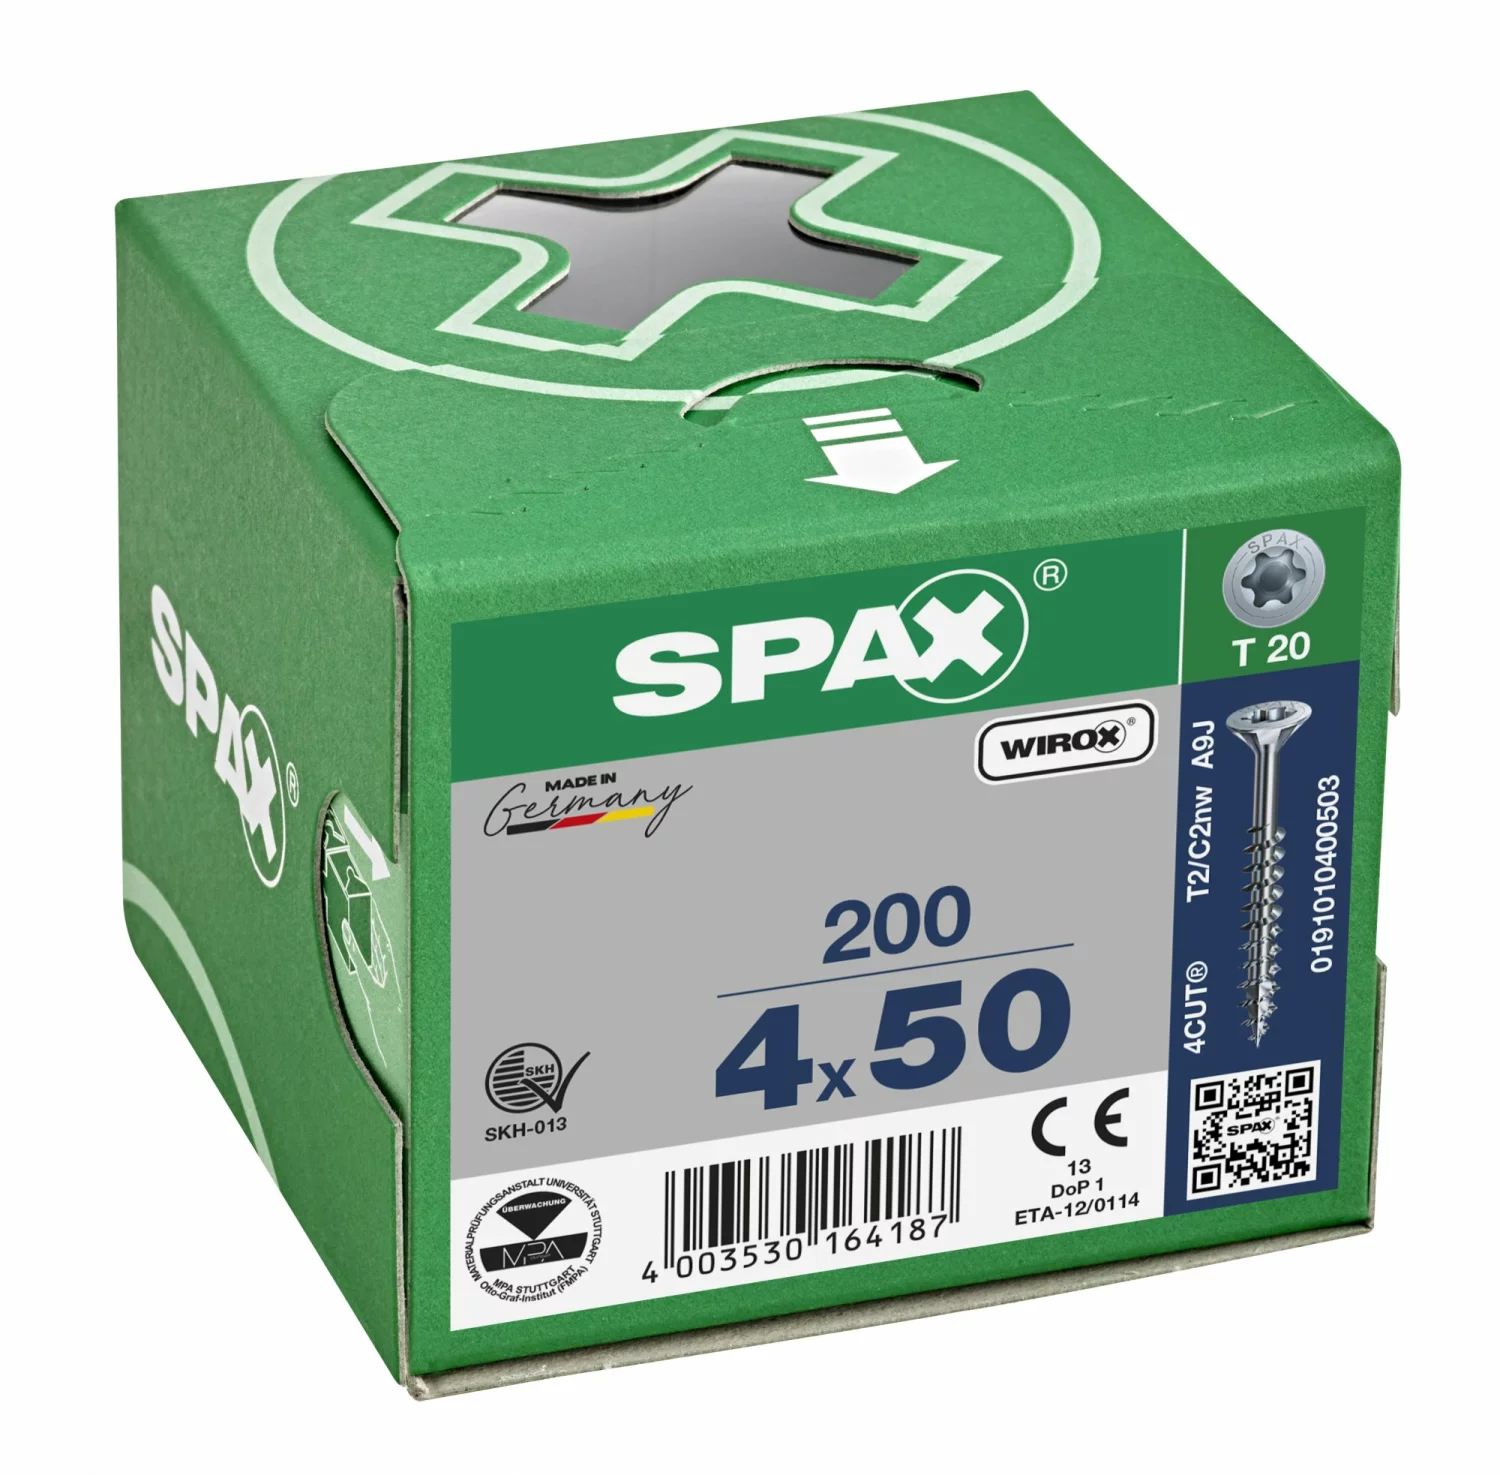 SPAX 191010400503 Universele schroef, Verzonken kop, 4 x 50, Deeldraad, T-STAR plus T20 - WIROX - 200 stuks